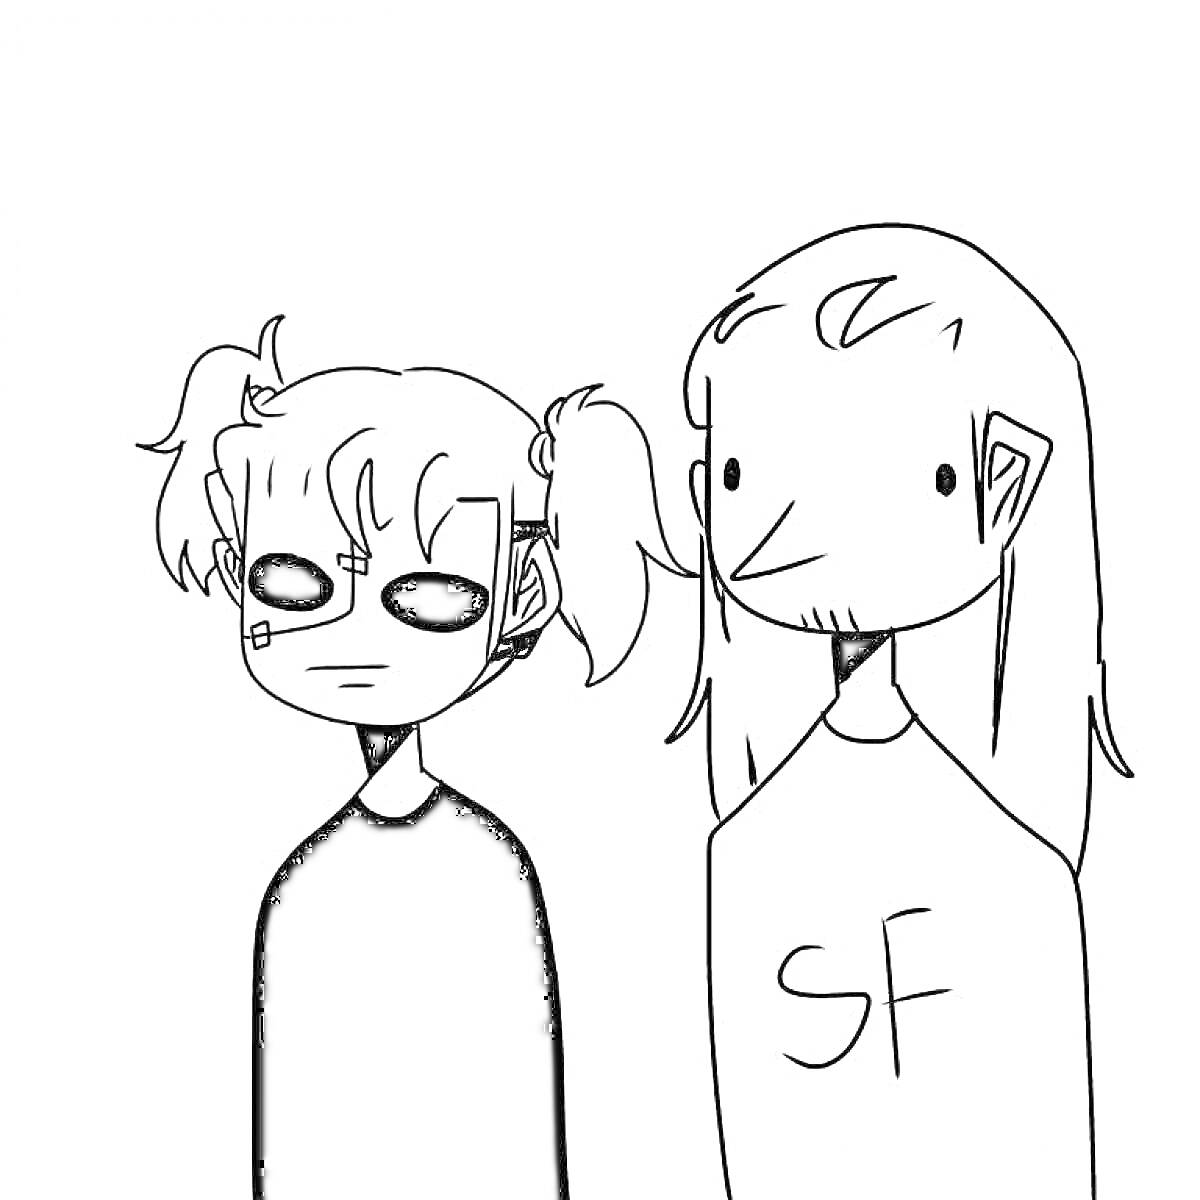 Раскраска двое персонажей с длинными волосами, один с маской и двумя хвостиками, другой с бородой, футболка с надписью SF